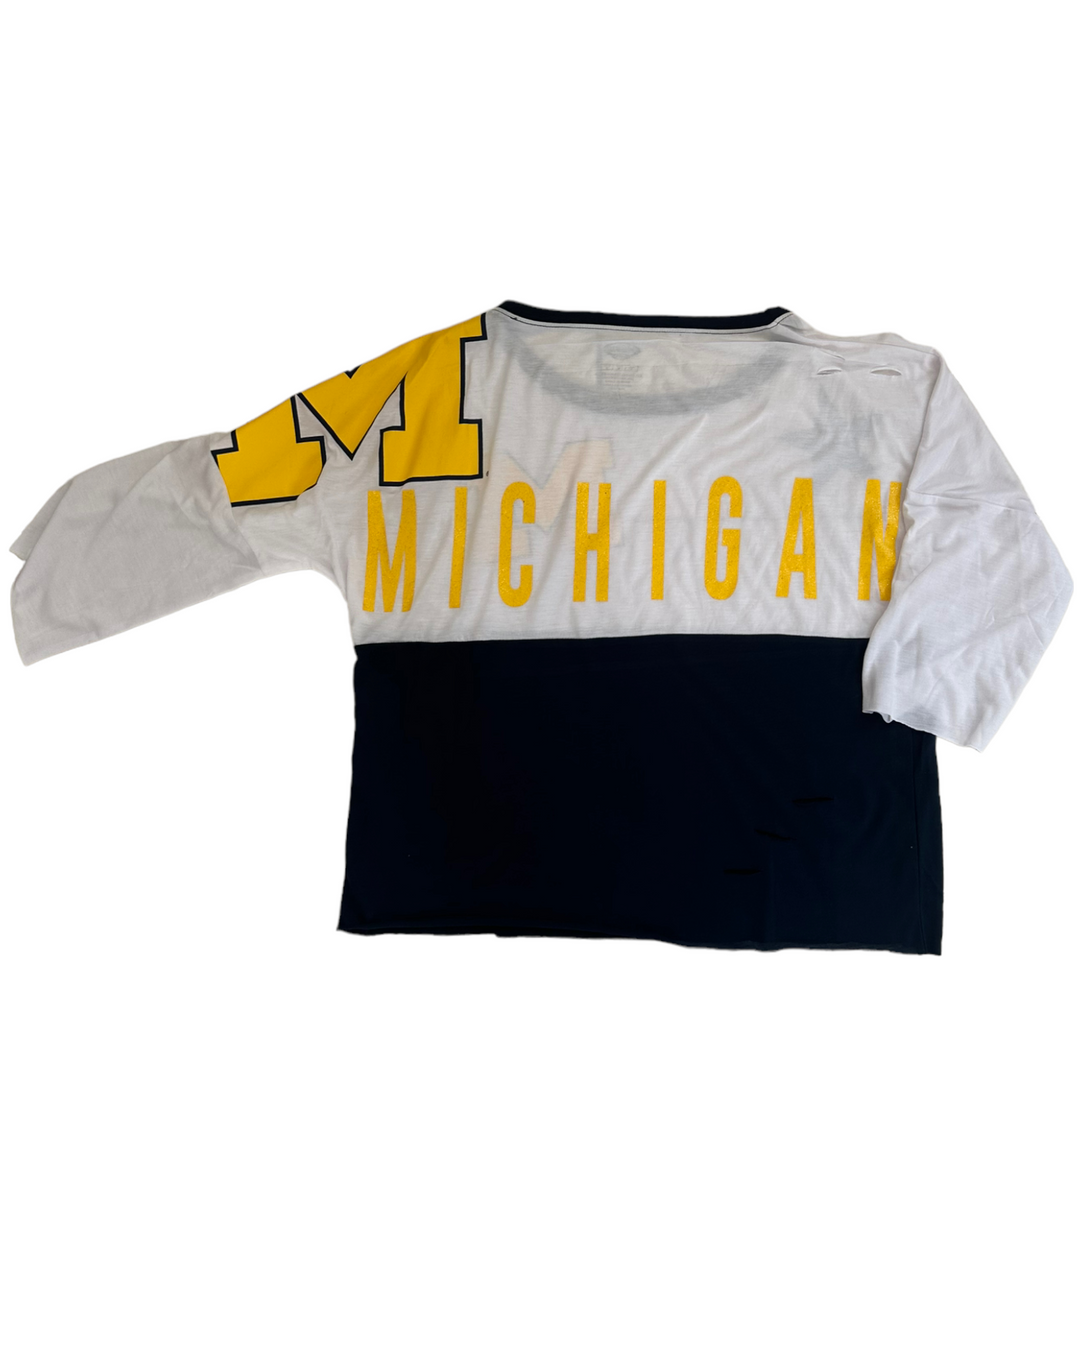 Michigan Vintage Reworked 3/4 Sleeve